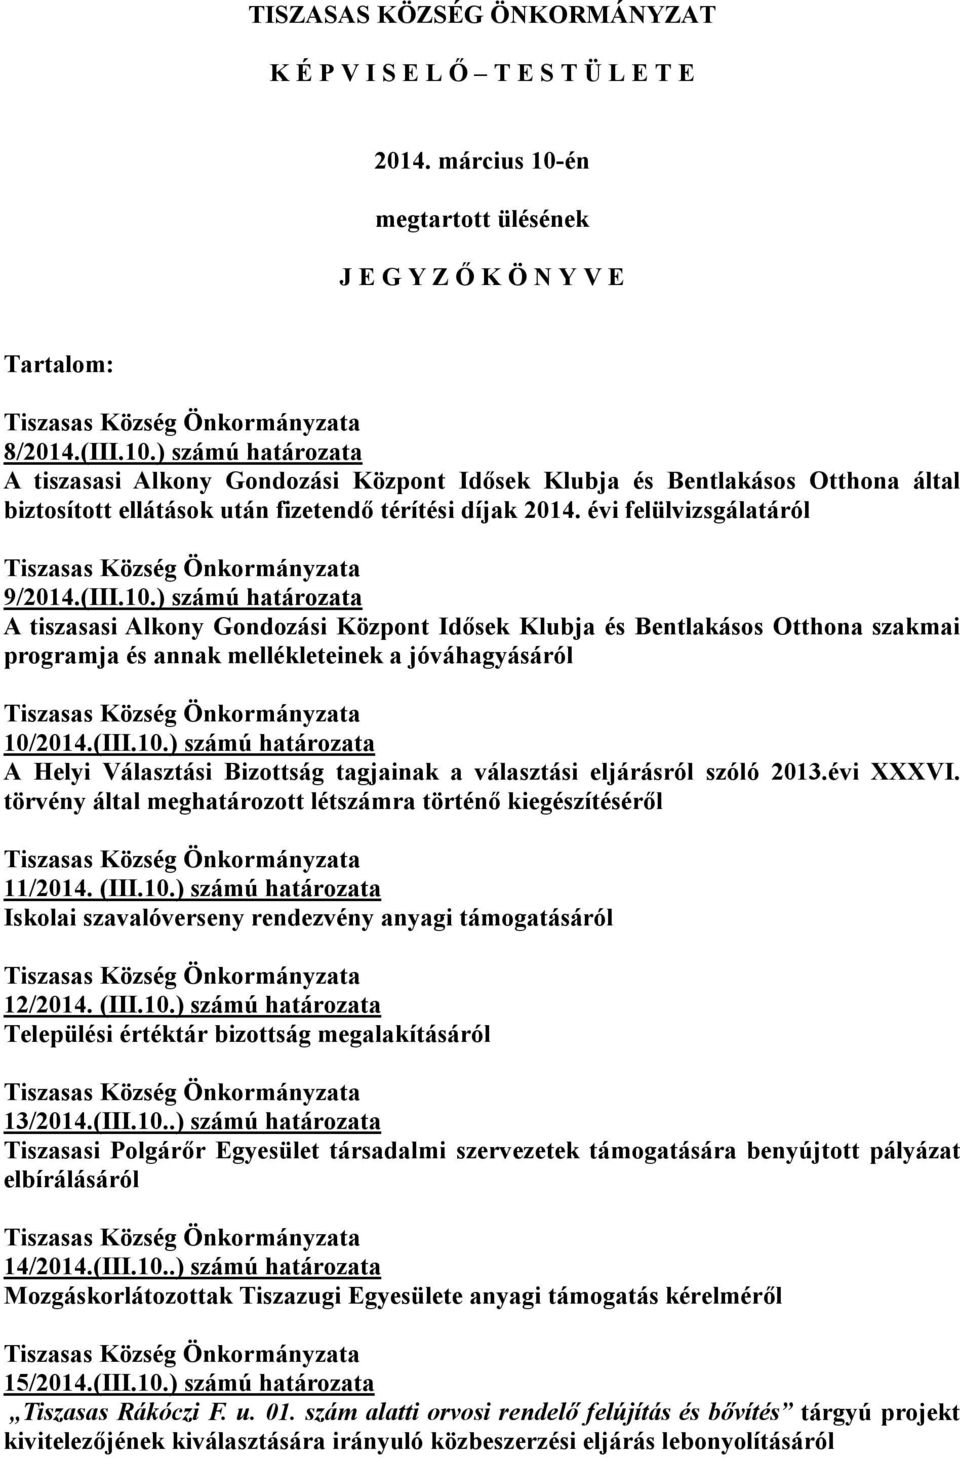 ) számú határozata A tiszasasi Alkony Gondozási Központ Idősek Klubja és Bentlakásos Otthona által biztosított ellátások után fizetendő térítési díjak 2014. évi felülvizsgálatáról 9/2014.(III.10.